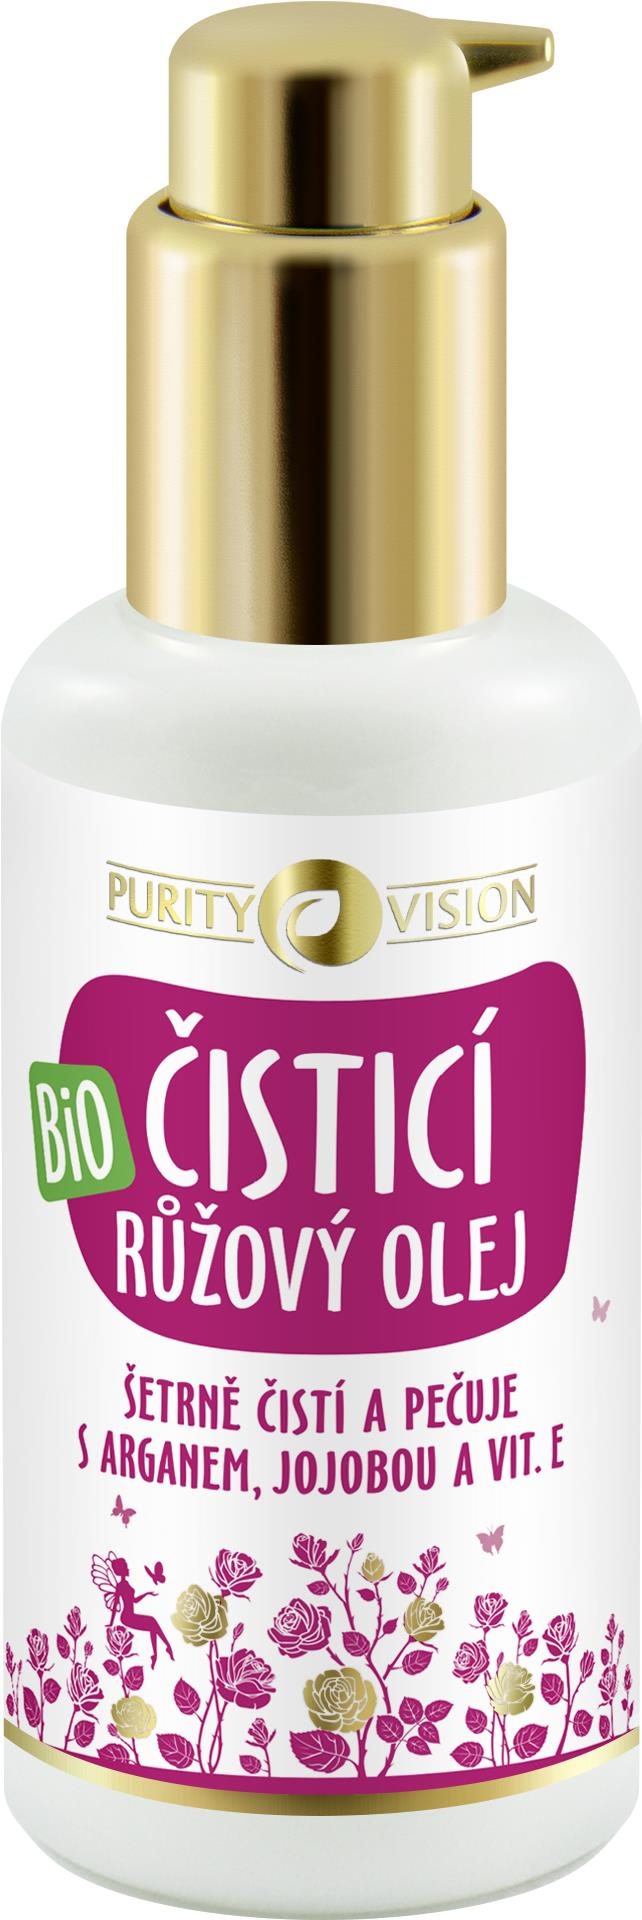 PURITY VISION Bio Rózsa tisztítóolaj argánnal, jojobával és E-vitaminnal 100 ml